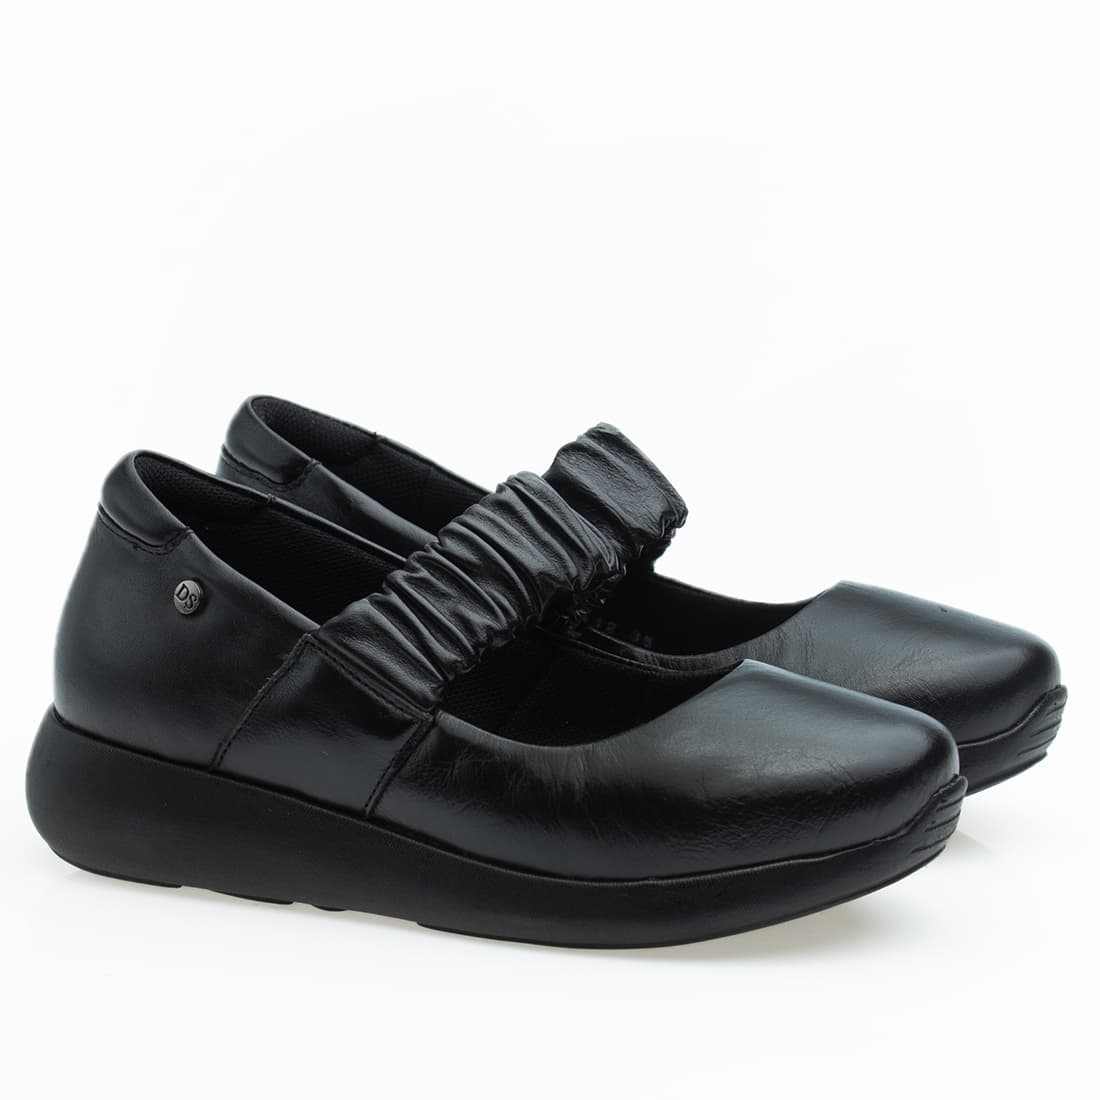 Sapato Feminino Super Confortável em Couro Legítimo - 6868 - Preto 34 -  Calçados Femininos, Sapato Anatômico- Sapatos Confortáveis na Loja de  Calçados